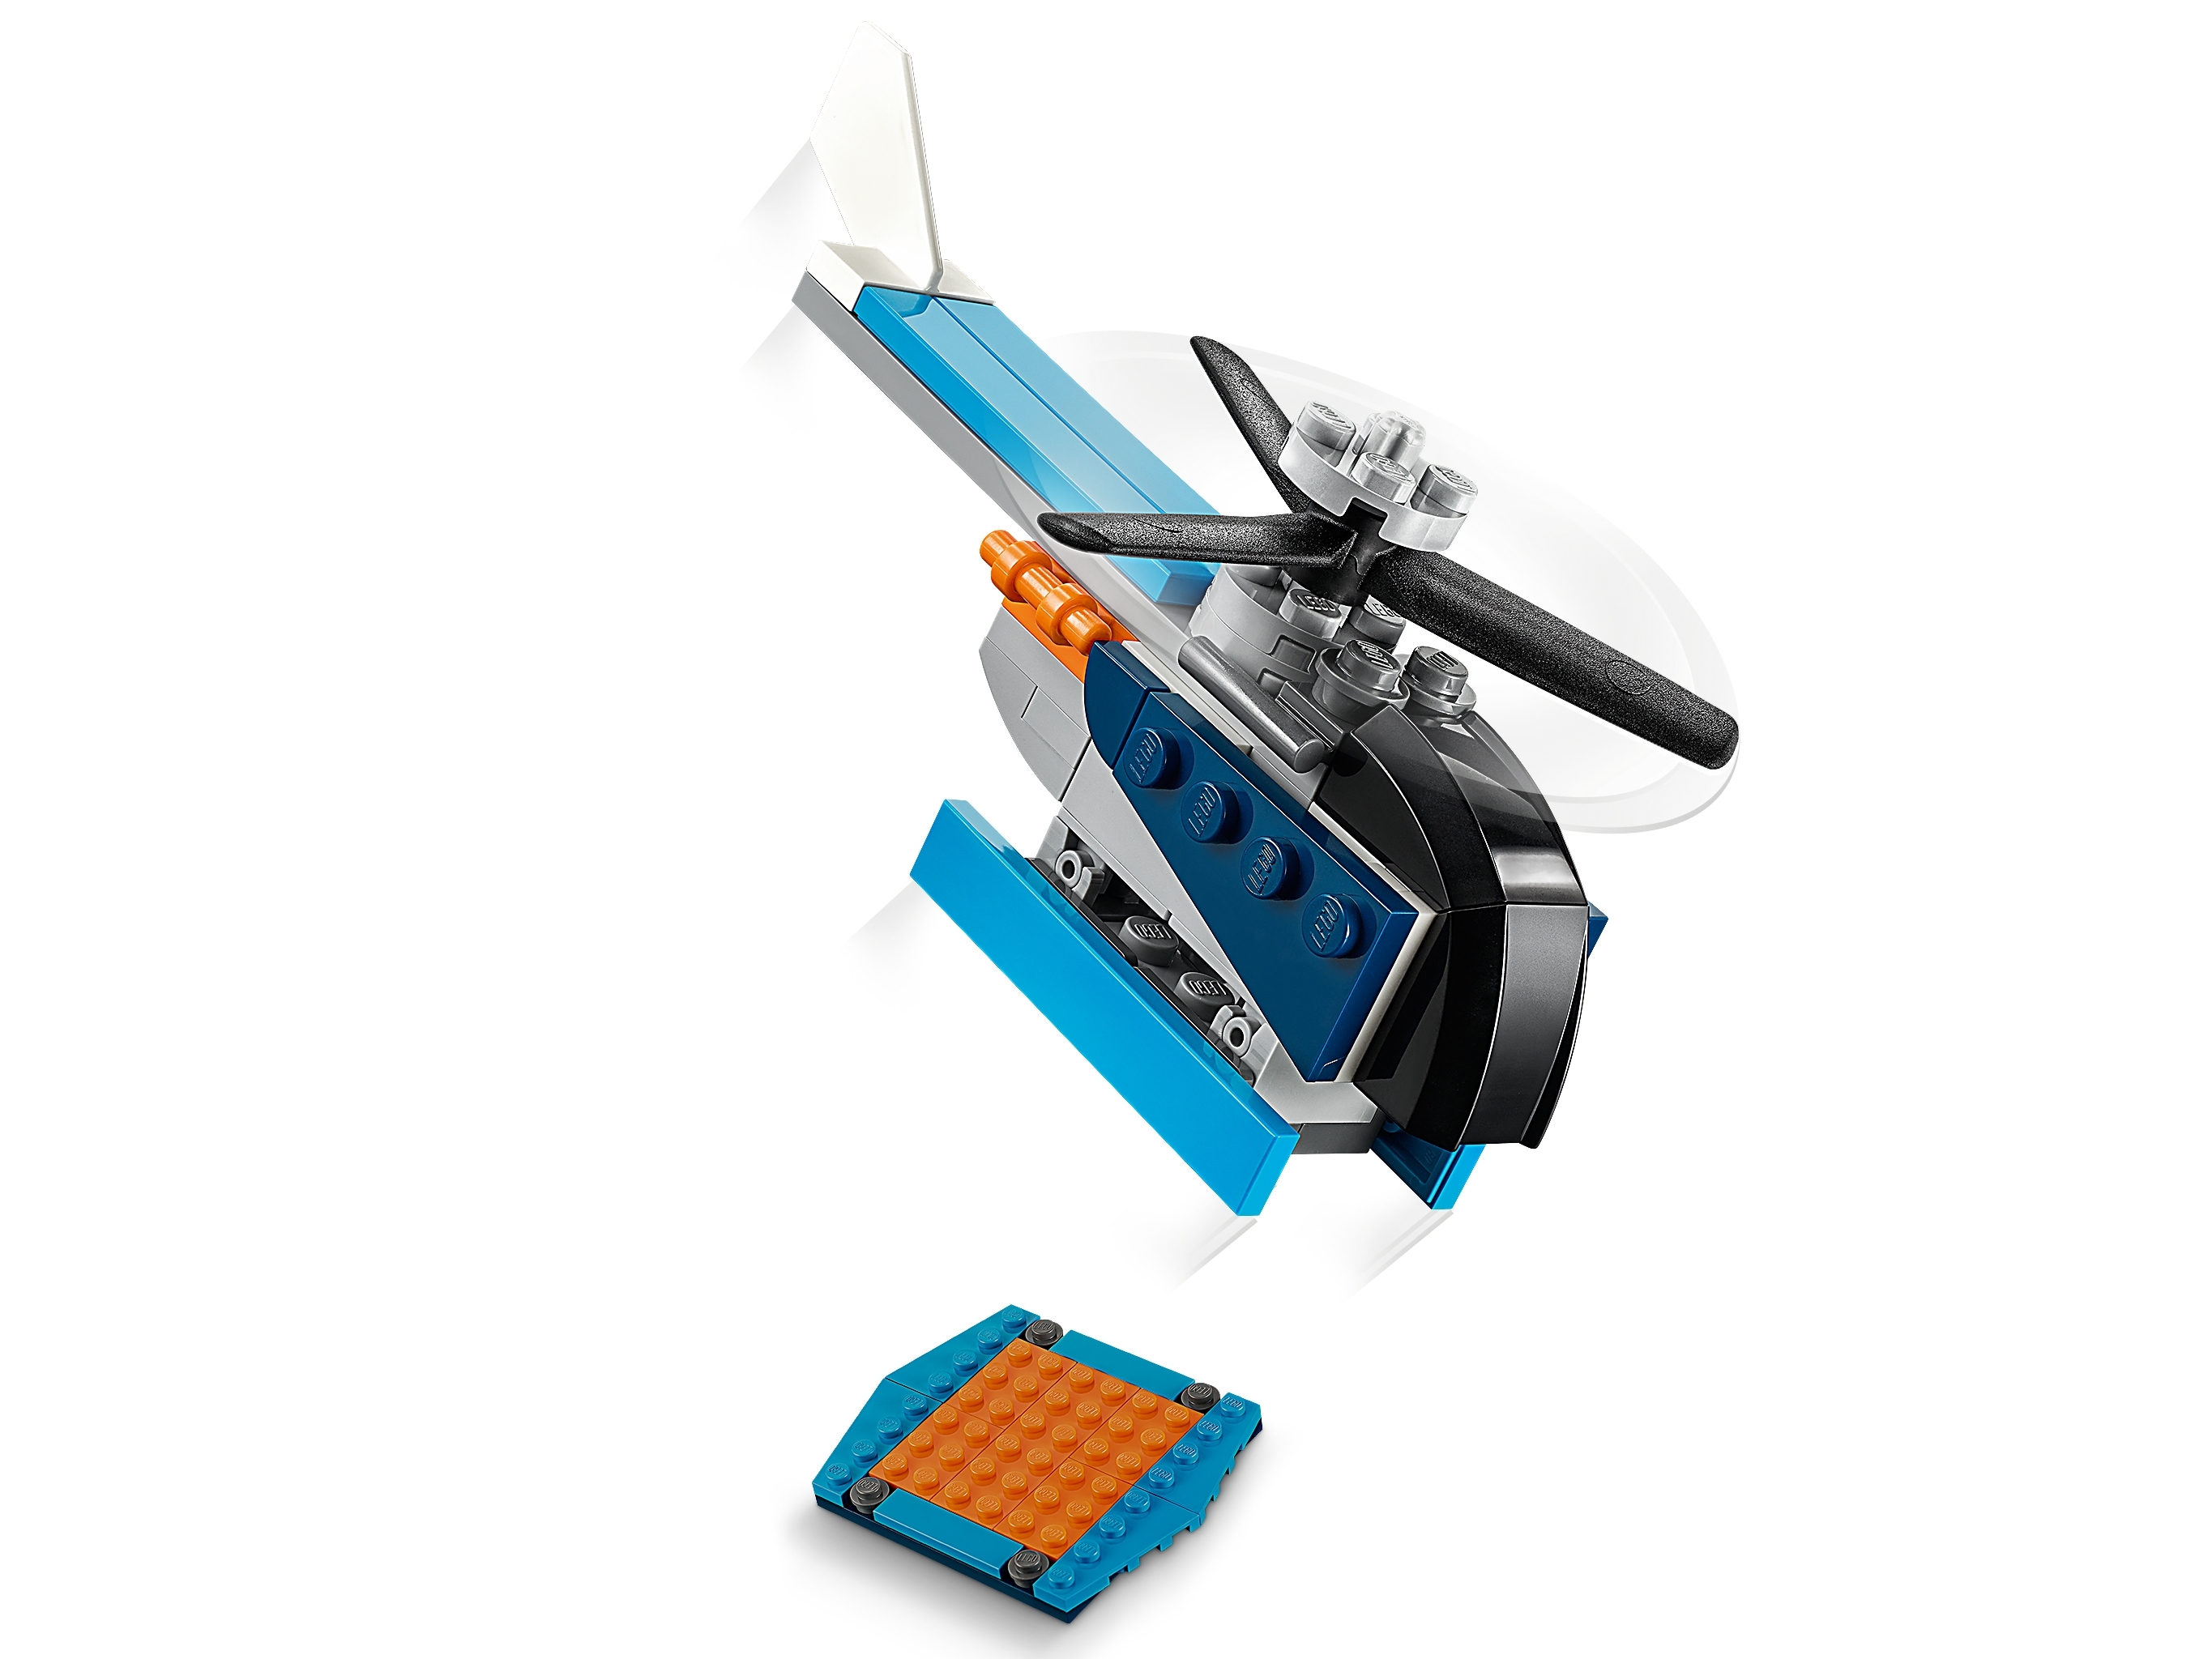 31099 Lego Creator Avión De Hélice 128 piezas de la edad de 6 años